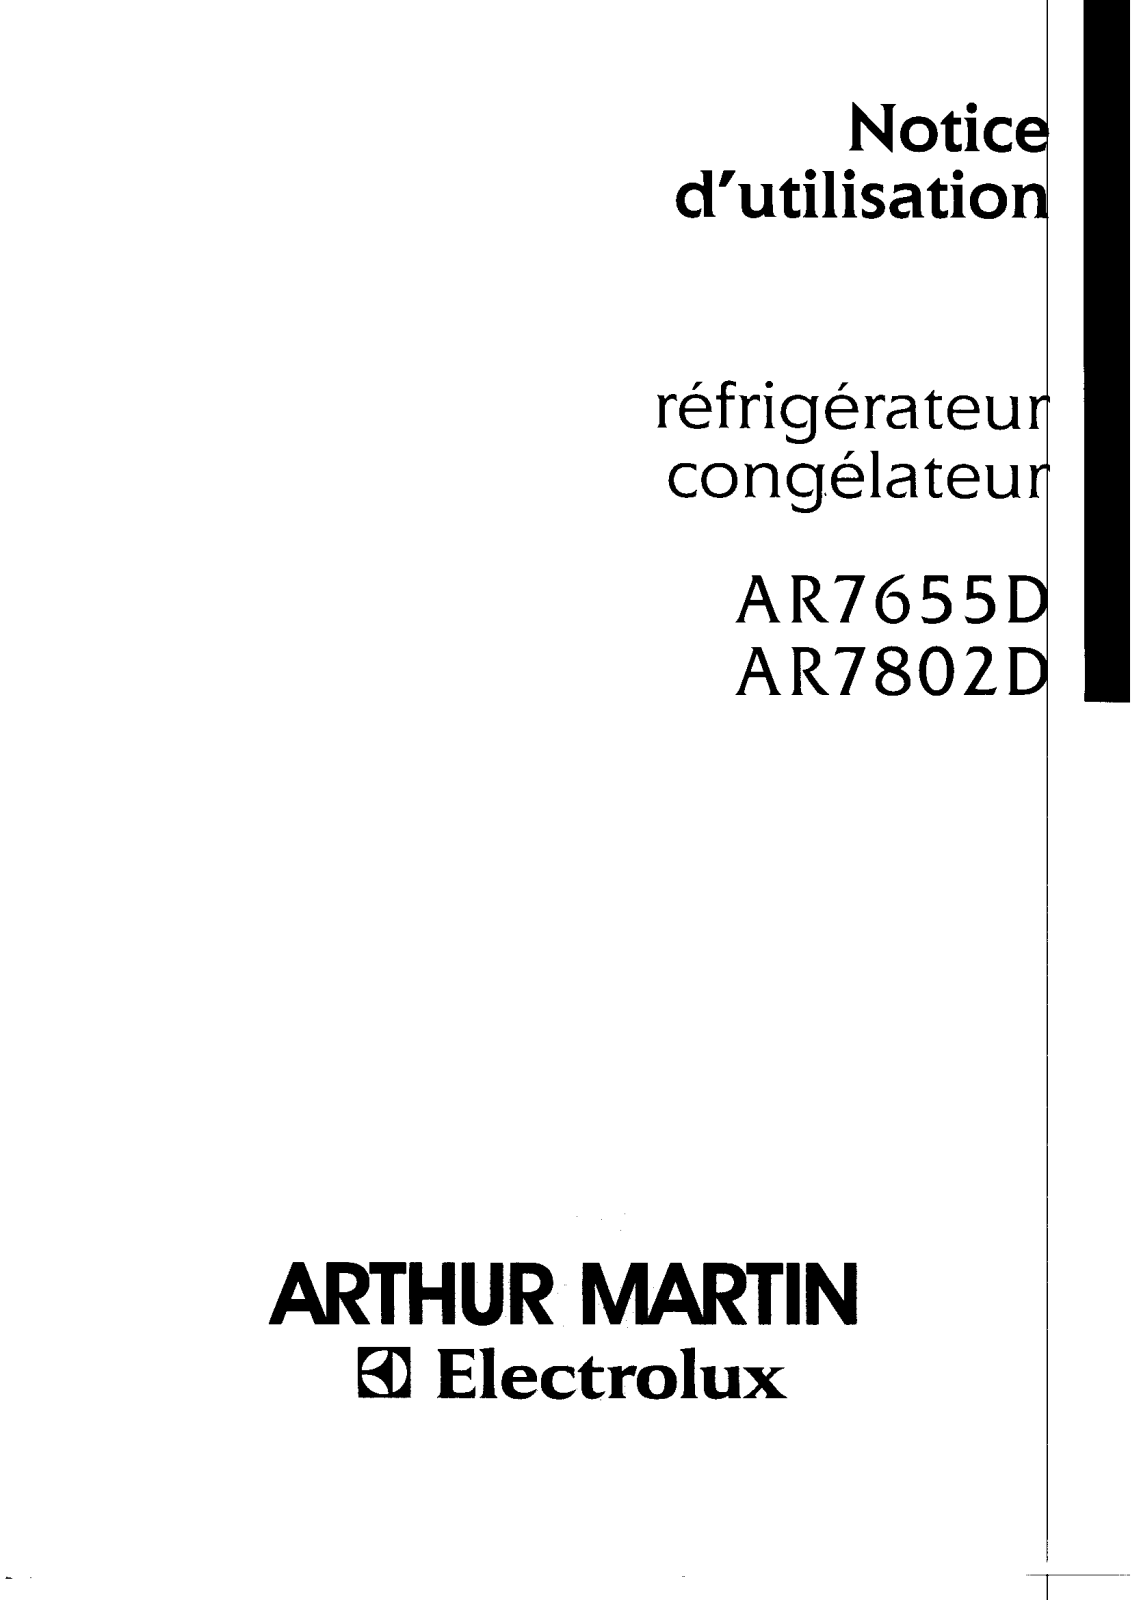 Arthur martin AR7655D, AR7802D User Manual